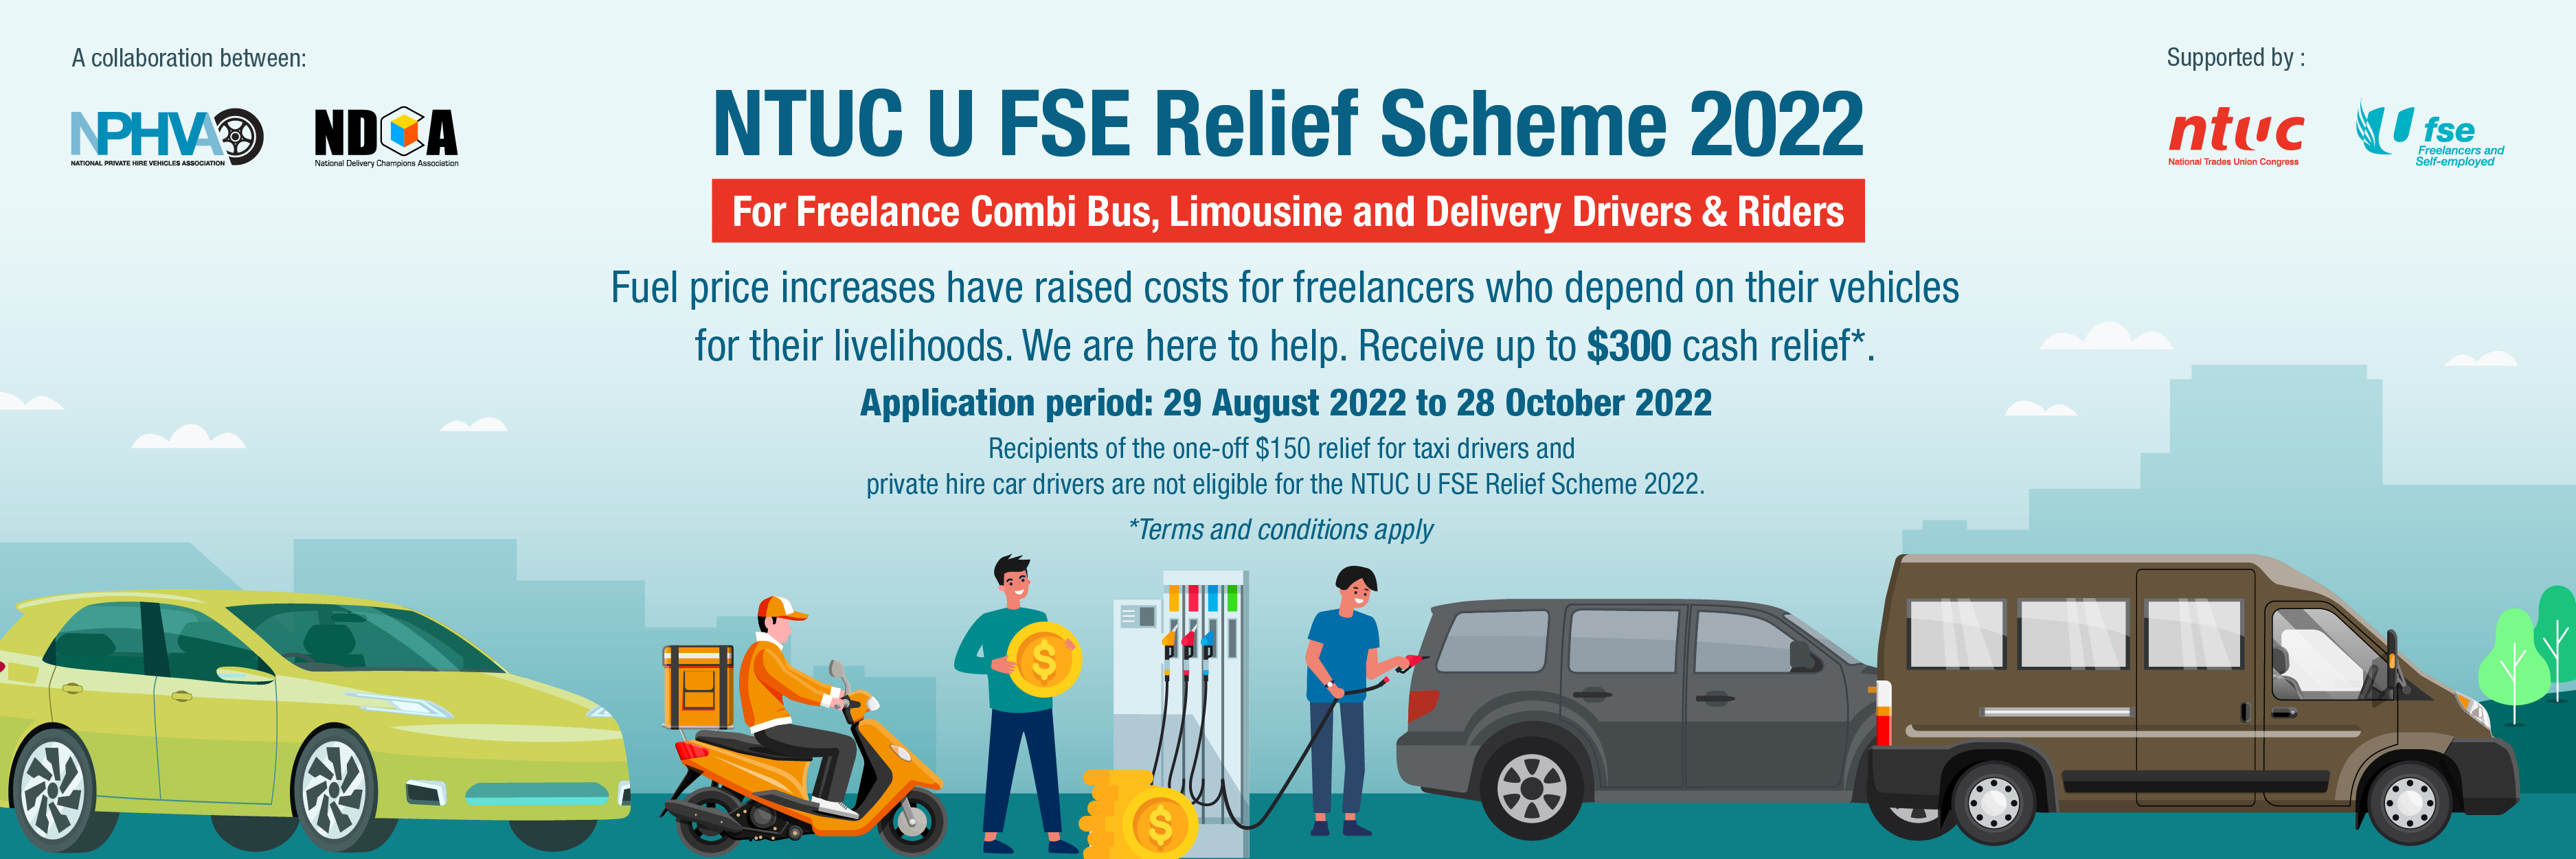 UFSE_landing_page_2022_relief scheme 2022.jpg